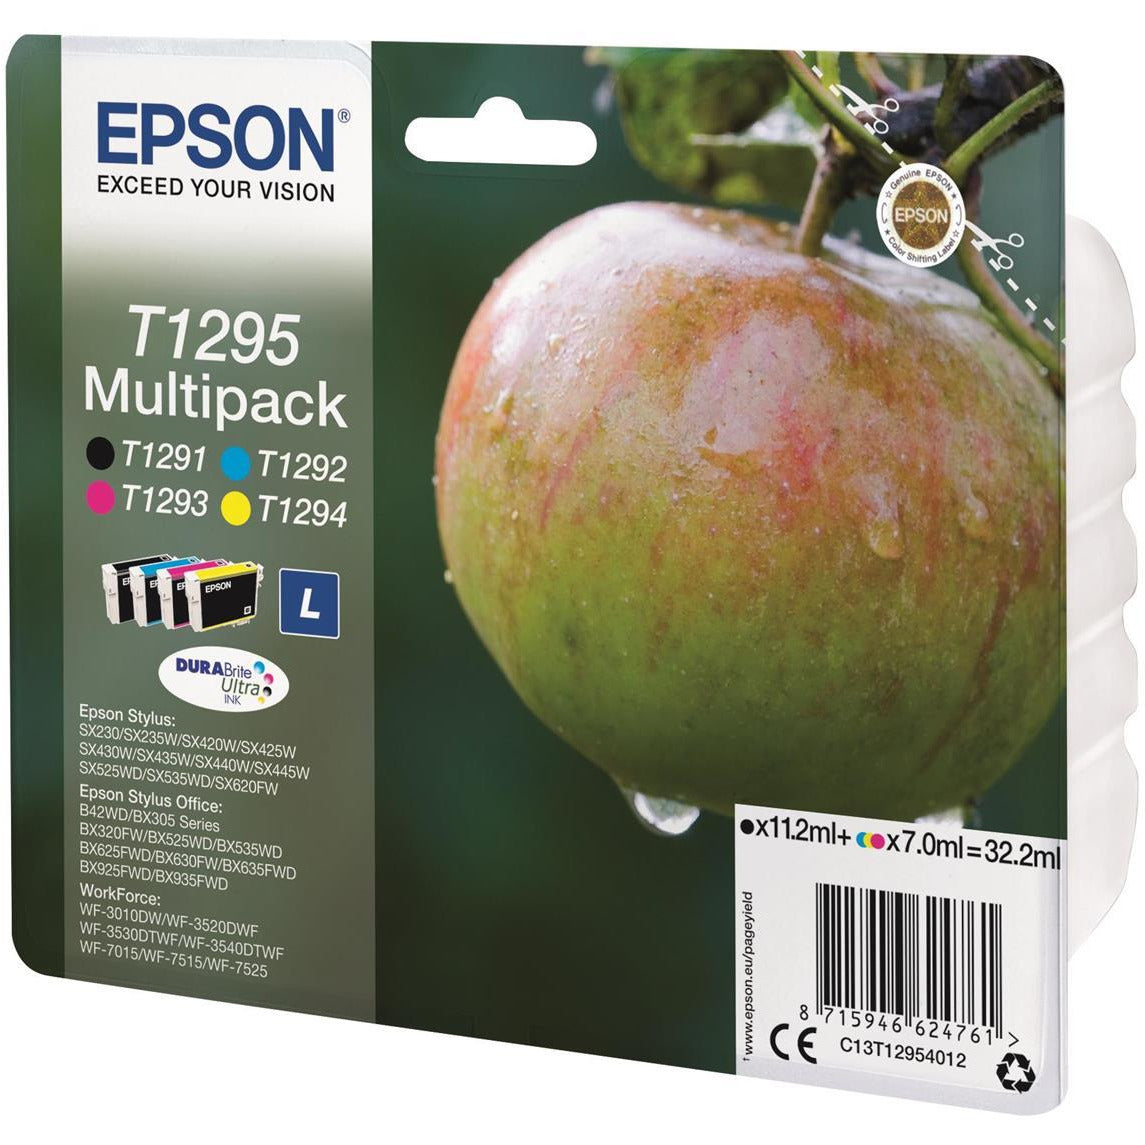 Epson Apple T1295 4 lita pakki blekhylkis svart, blátt, rautt, gult (Retail Packed, Untagged) fyrir BX305F/BX320FW/BX525WD/BX625FWD/SX420W